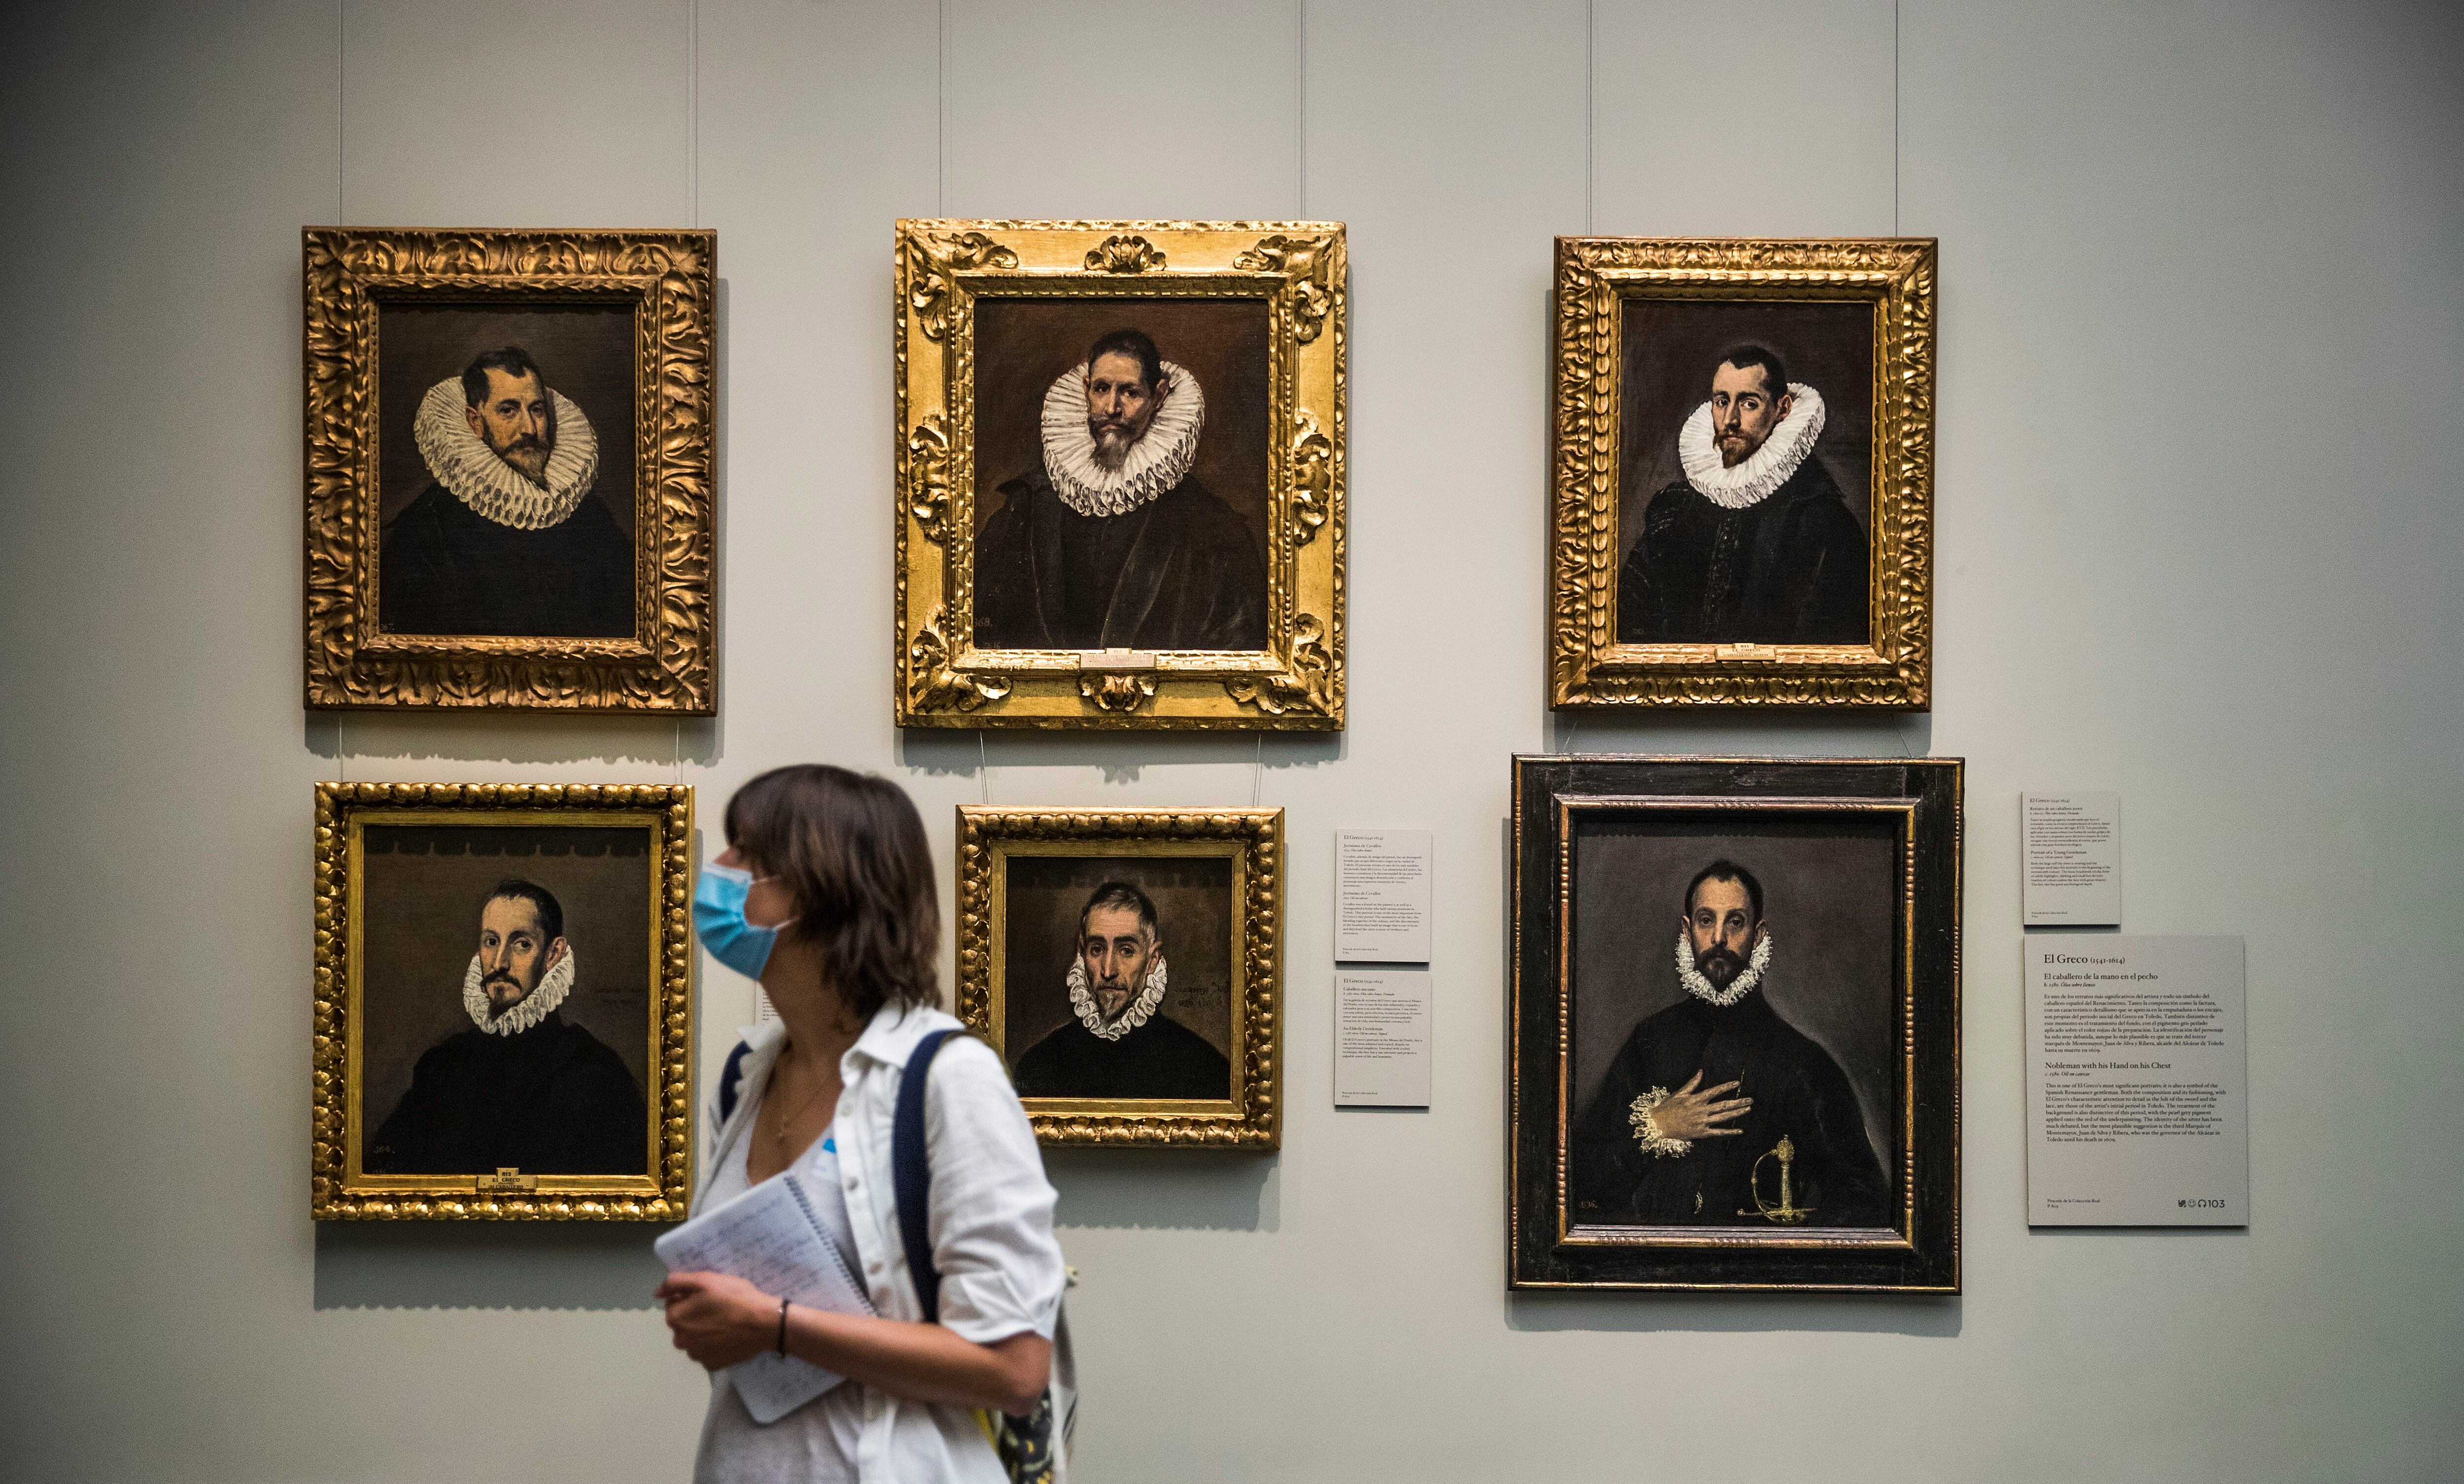 Seis retratos de El Greco, incluido el famosísimo 'El caballero de la mano en el pecho' (abajo a la derecha).